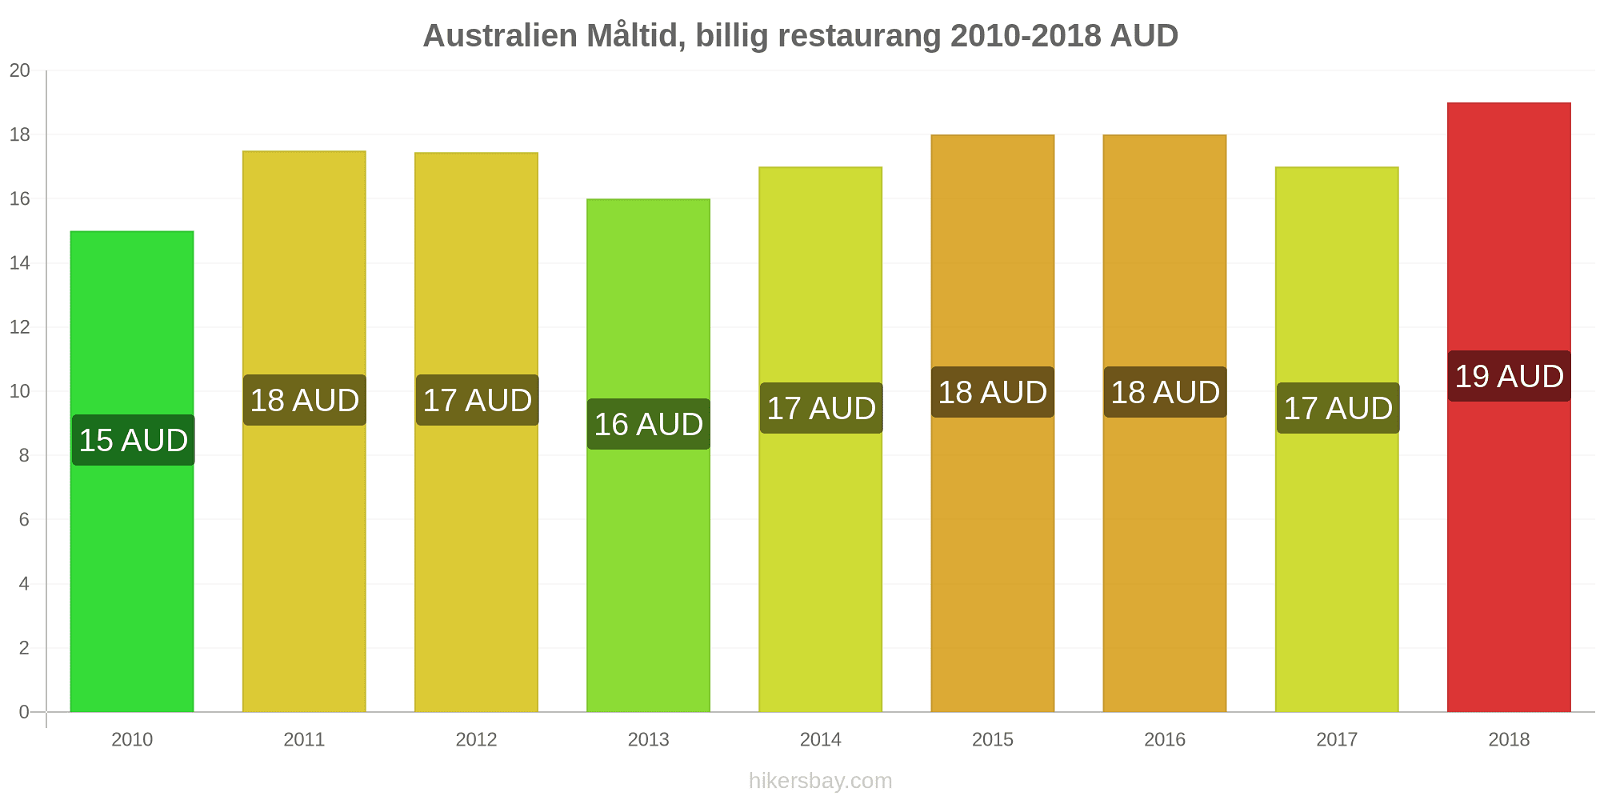 Australien prisändringar Måltid i en billig restaurang hikersbay.com